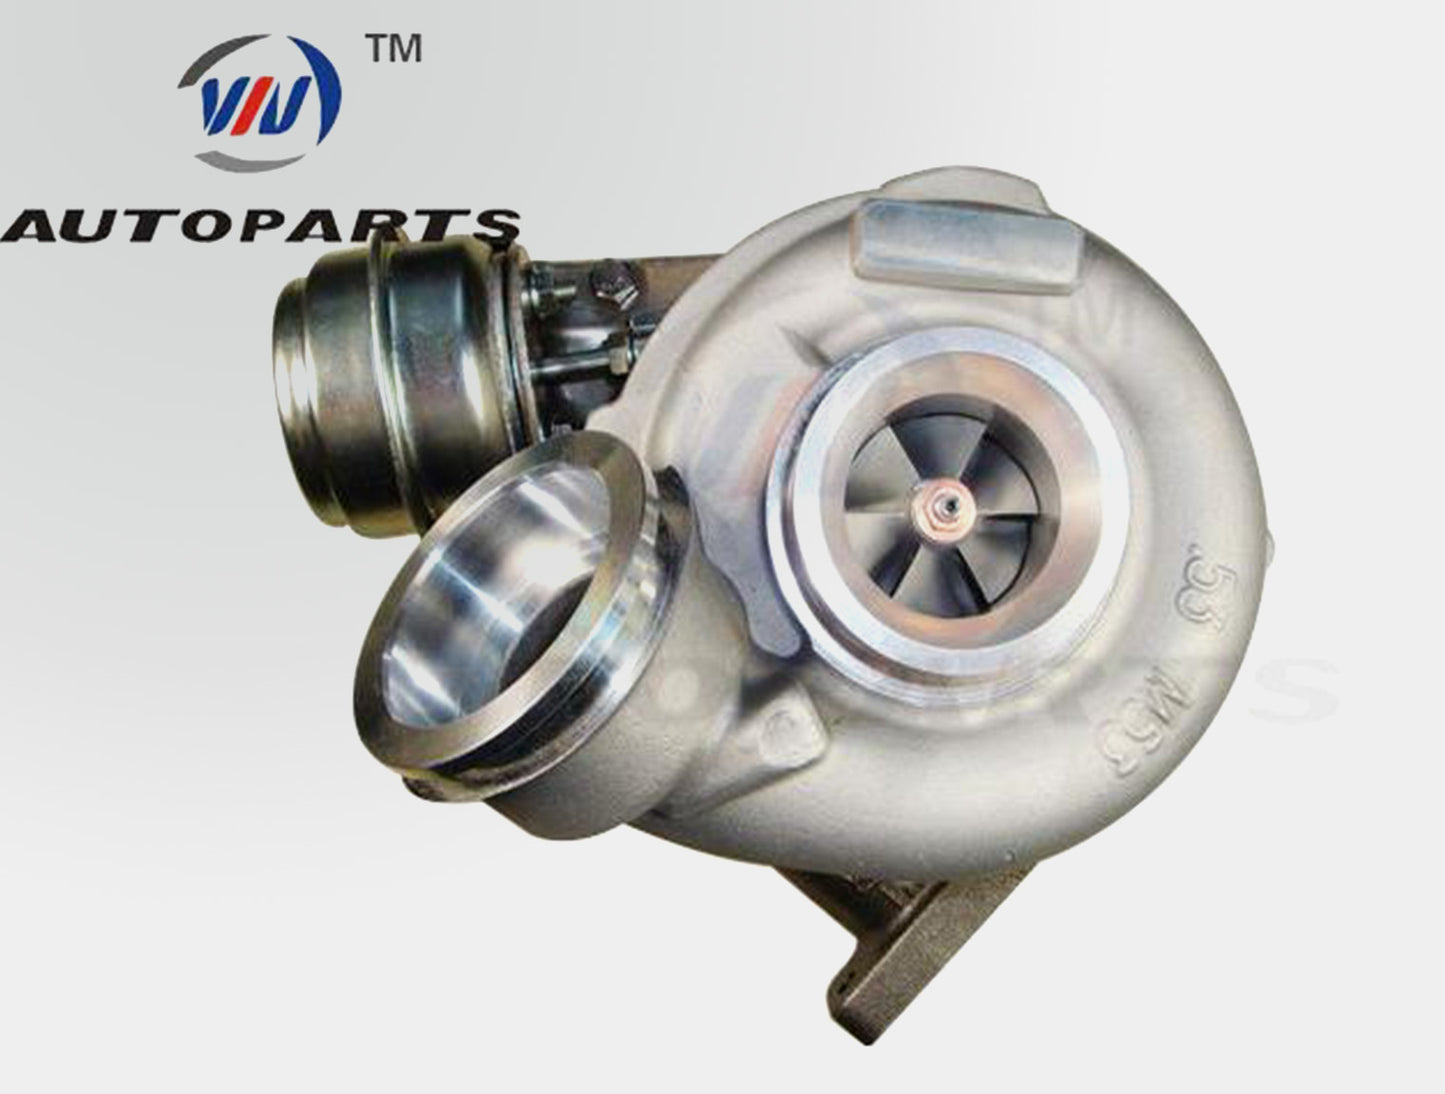 Turbocharger 709838-5005S for Mercedes Benz Sprinter 216£¬ 216CDI£¬Dodge Sprinter OM612 2.7L Diesel Engine